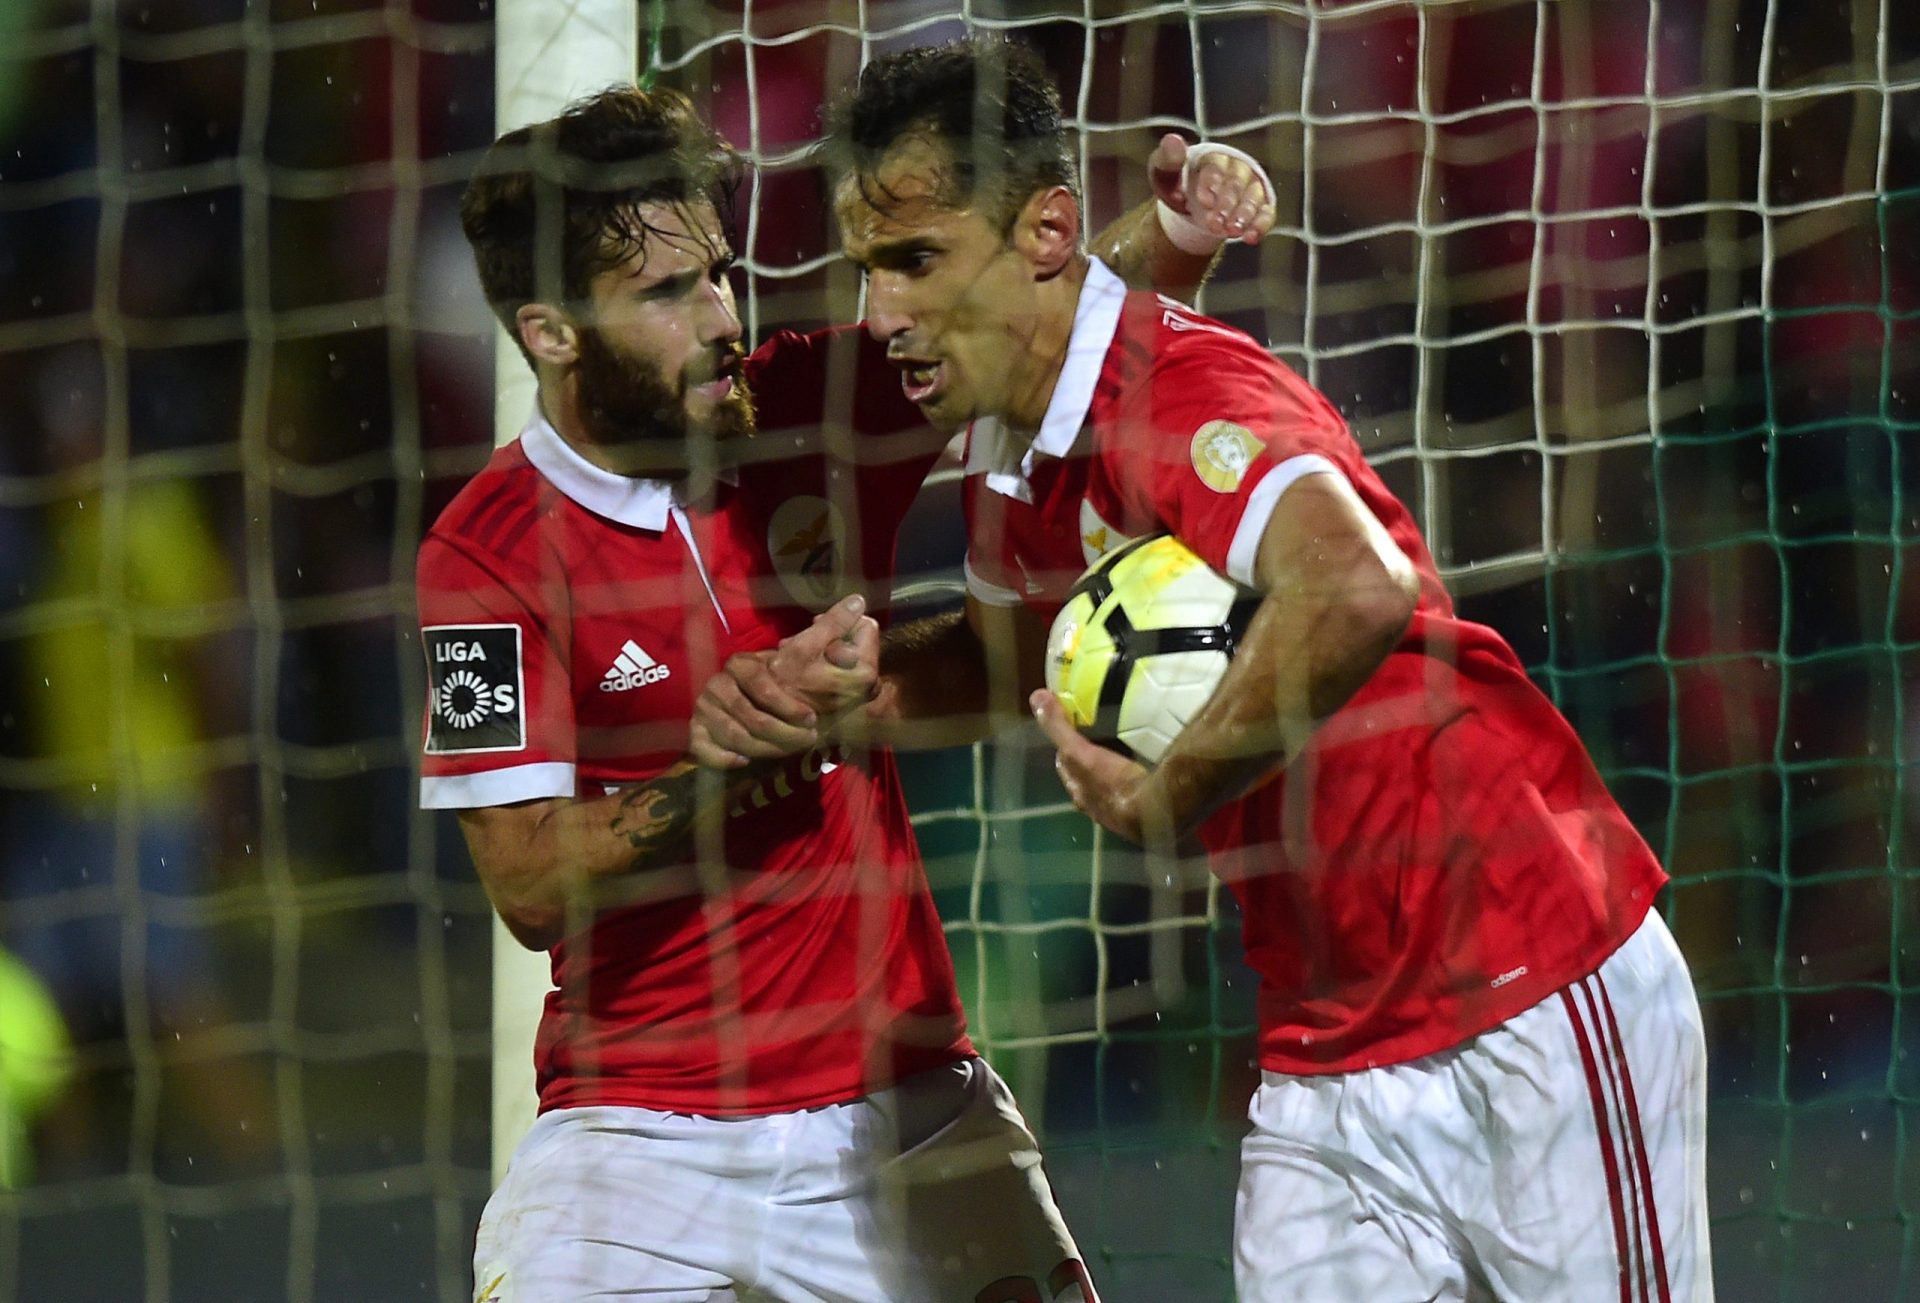 Benfica fala em “clima de grave intimidação” sobre os árbitros